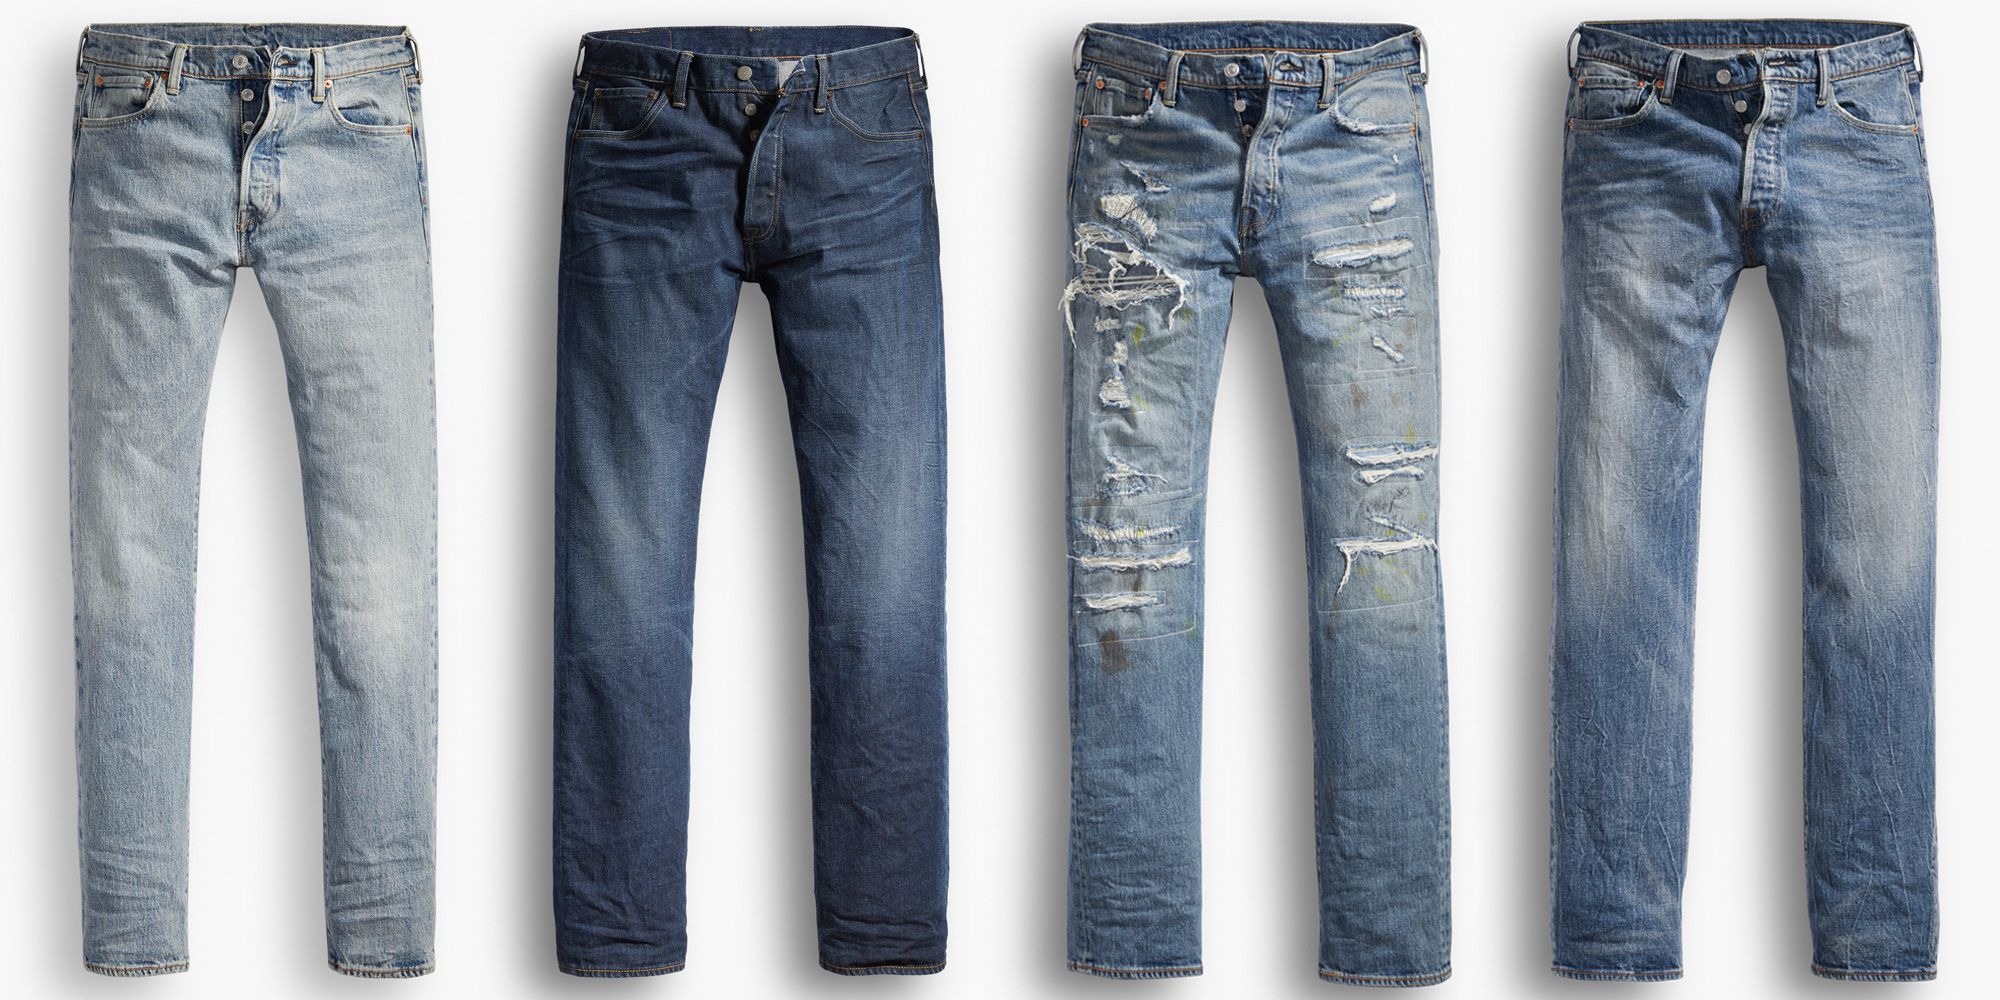 does levis jeans shrink after wash